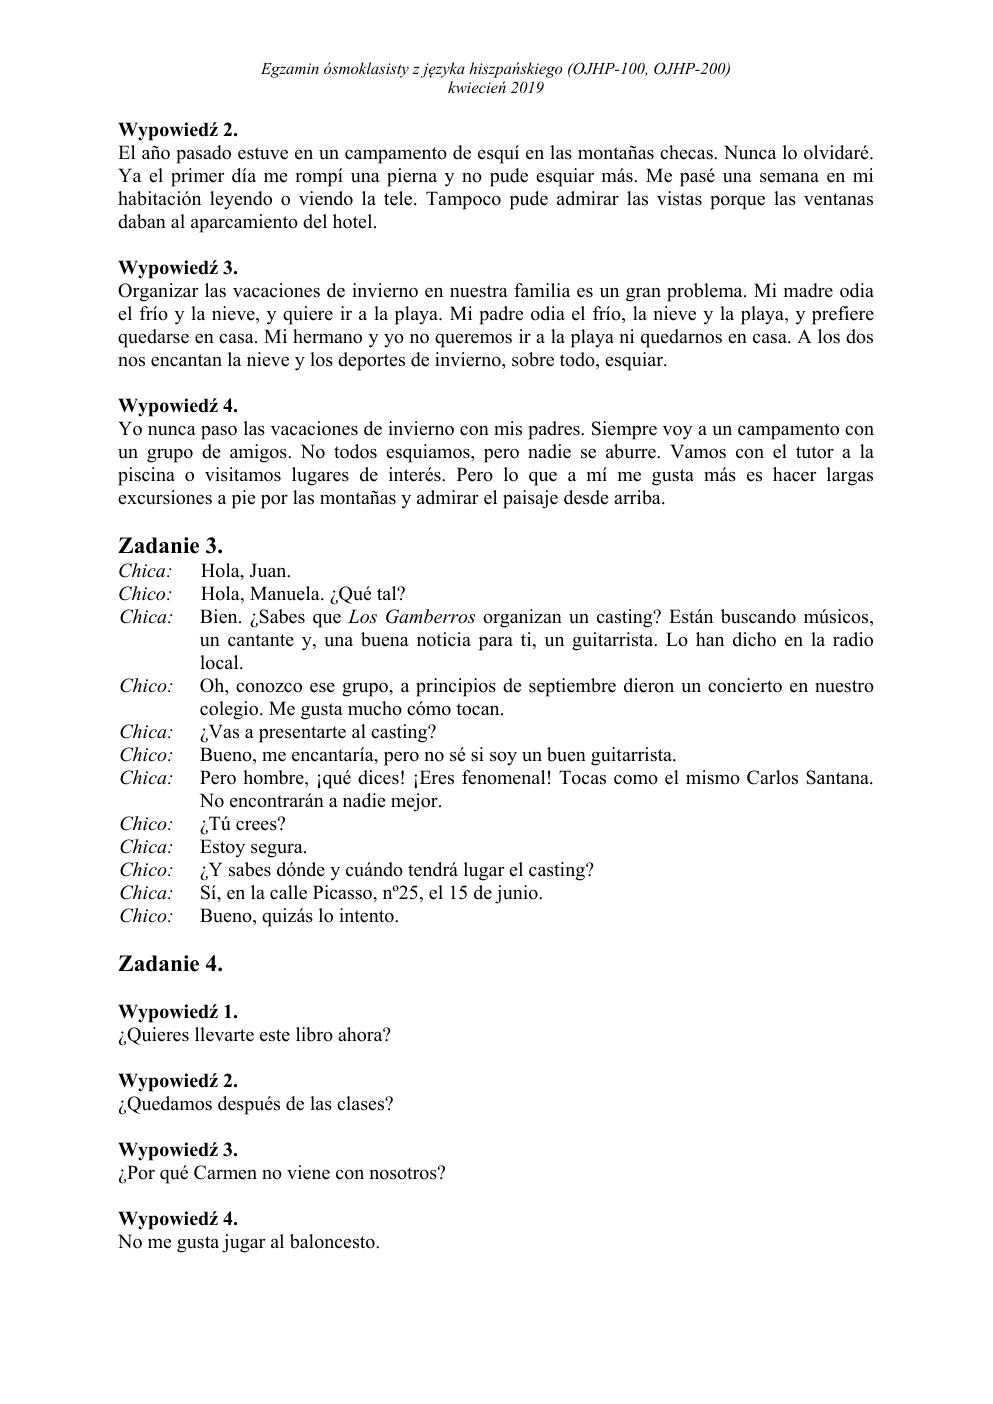 transkrypcja - hiszpański - egzamin ósmoklasisty 2019-2